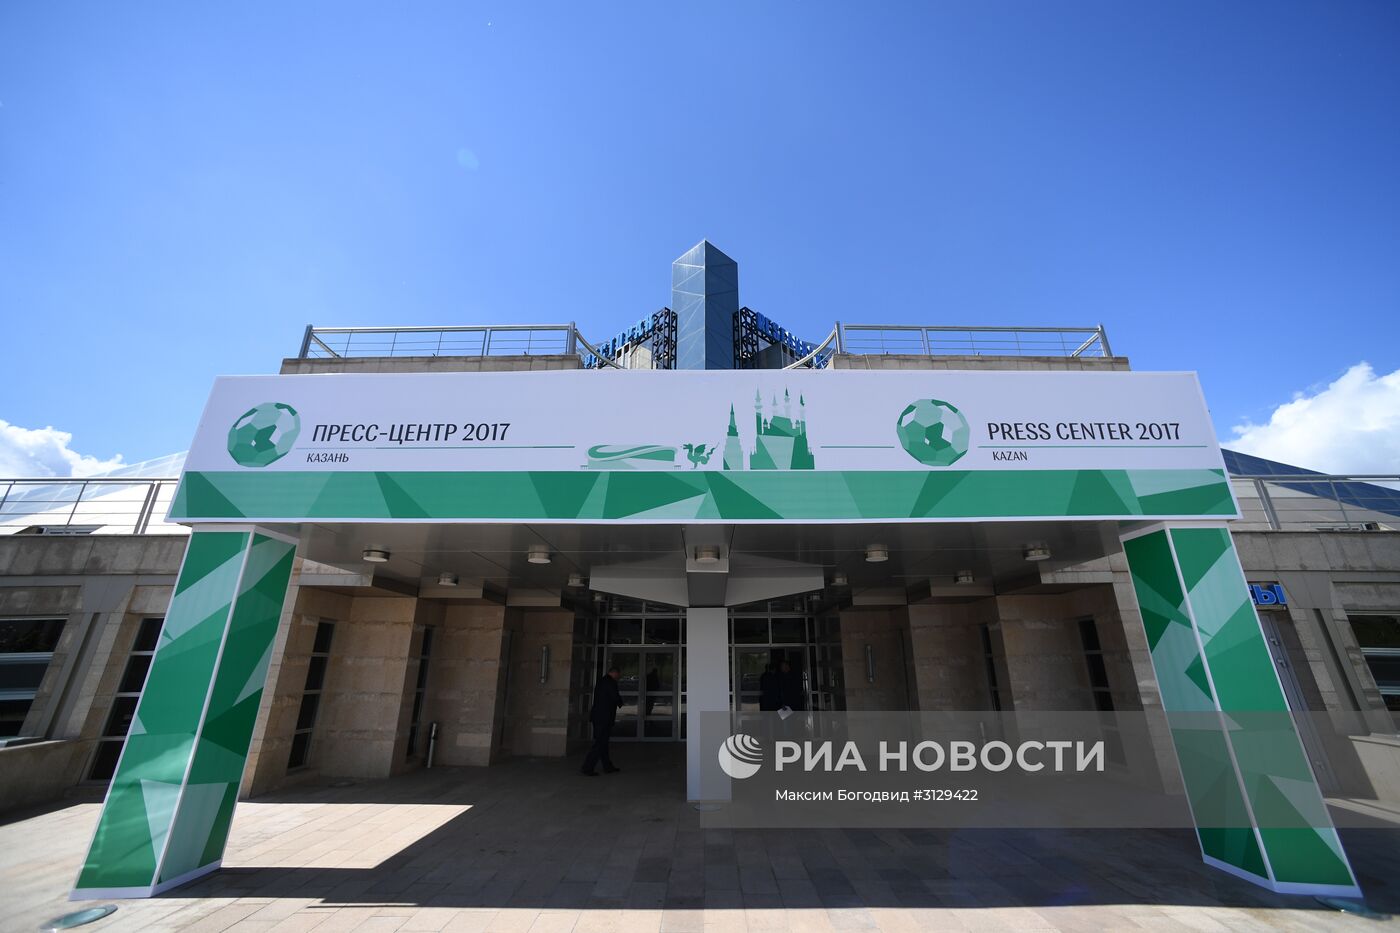 Подготовка к Кубку конфедераций 2017 в Казани